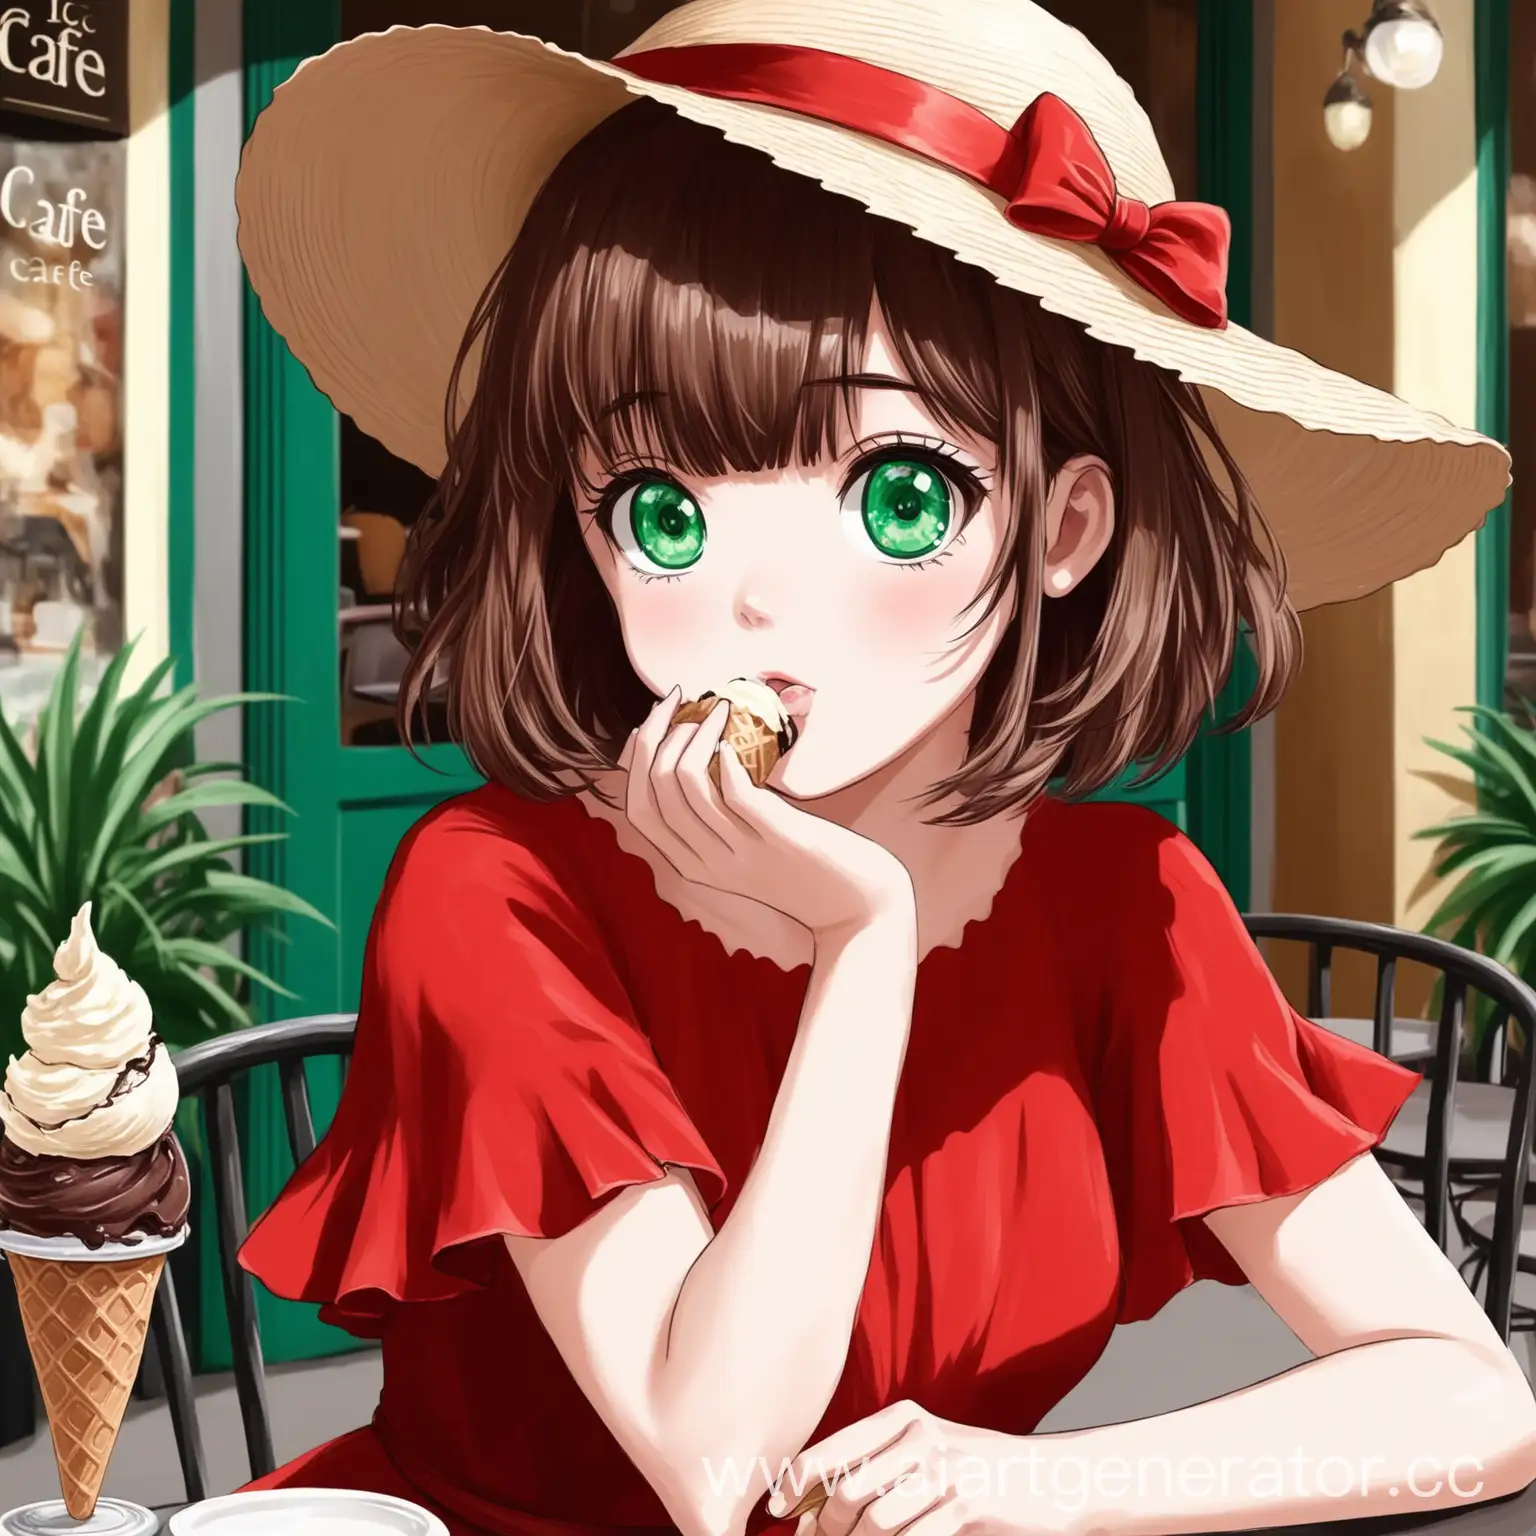 Aria Roscente en el vestido rojo con sombrero en el verano en un café come un helado con el pelo corto castaño y con flequillo y con los ojos verdes